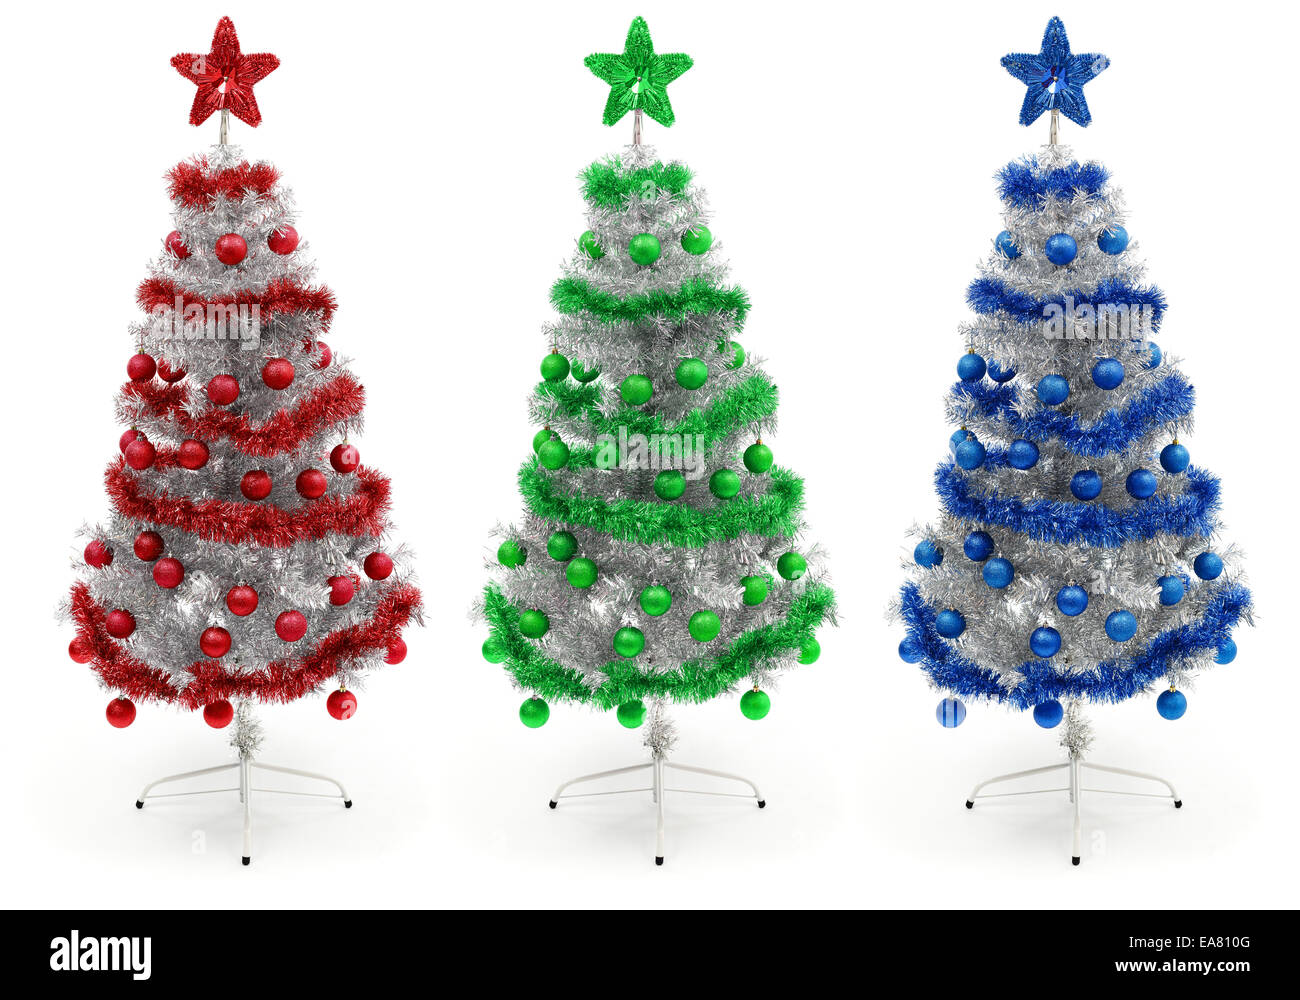 Albero Di Natale Argento E Blu.Il Rosso Il Verde E Il Blu Argento Decorate Albero Di Natale Foto Stock Alamy